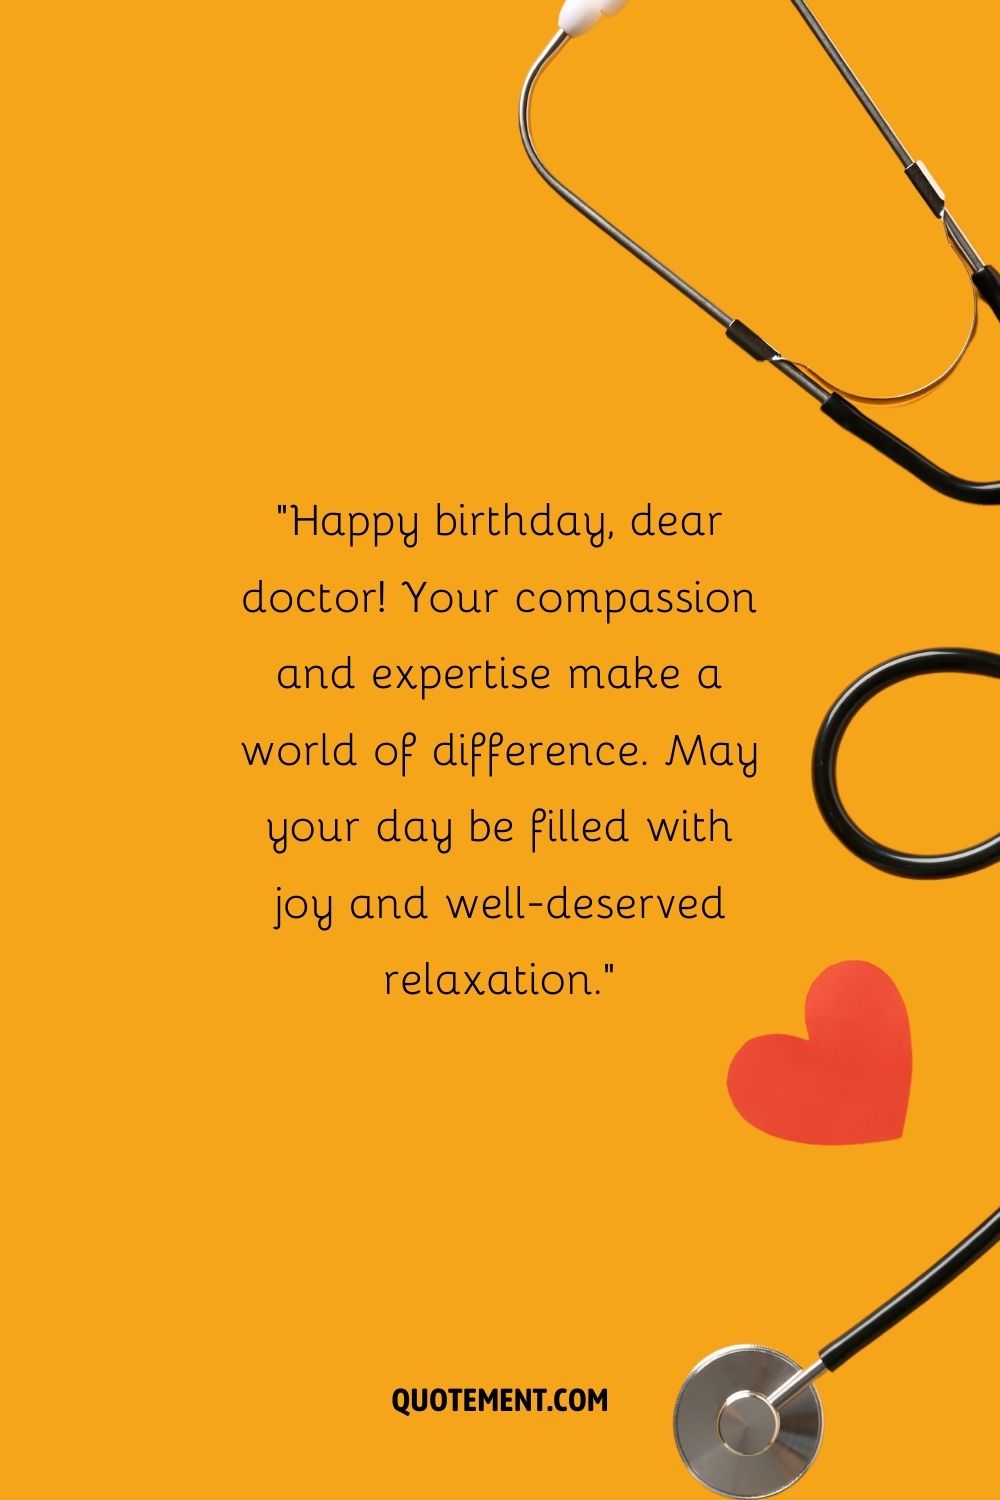 fondo naranja con un estetoscopio que representa deseos de feliz cumpleaños al médico